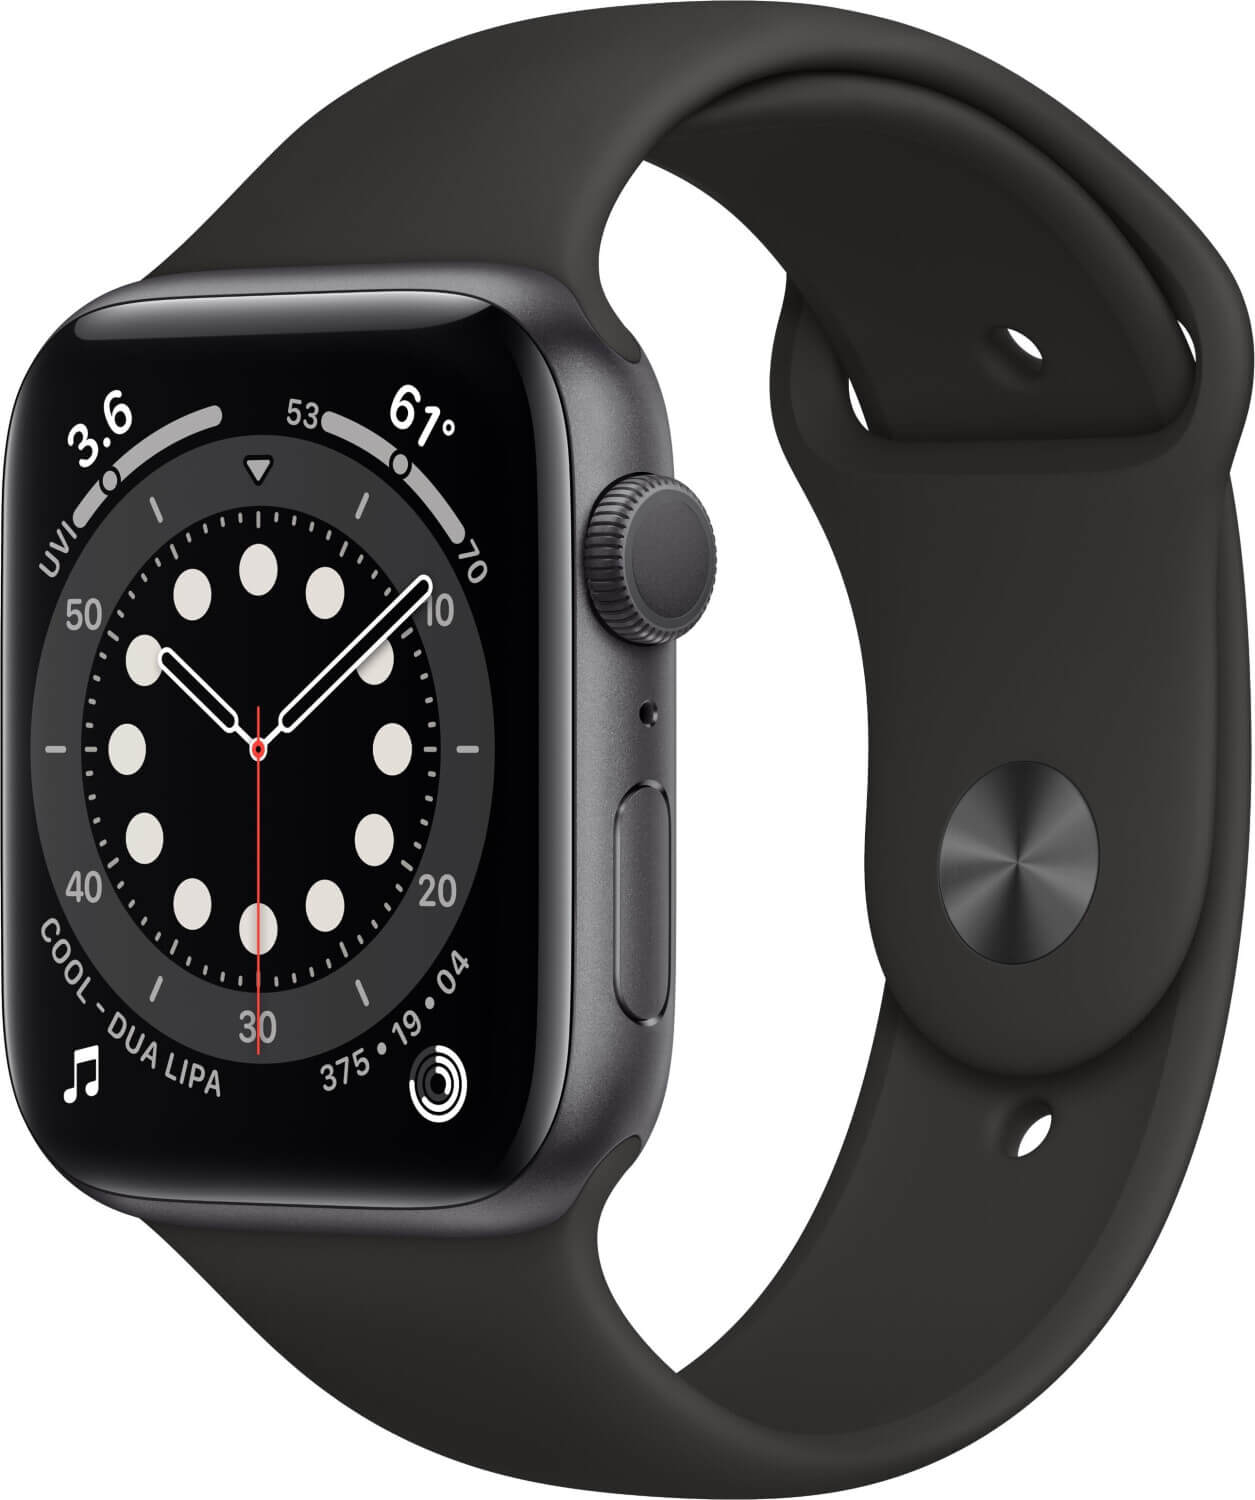 Apple Watch Series 6 Gunstig Kaufen Beste Angebote Preise Mydealz De